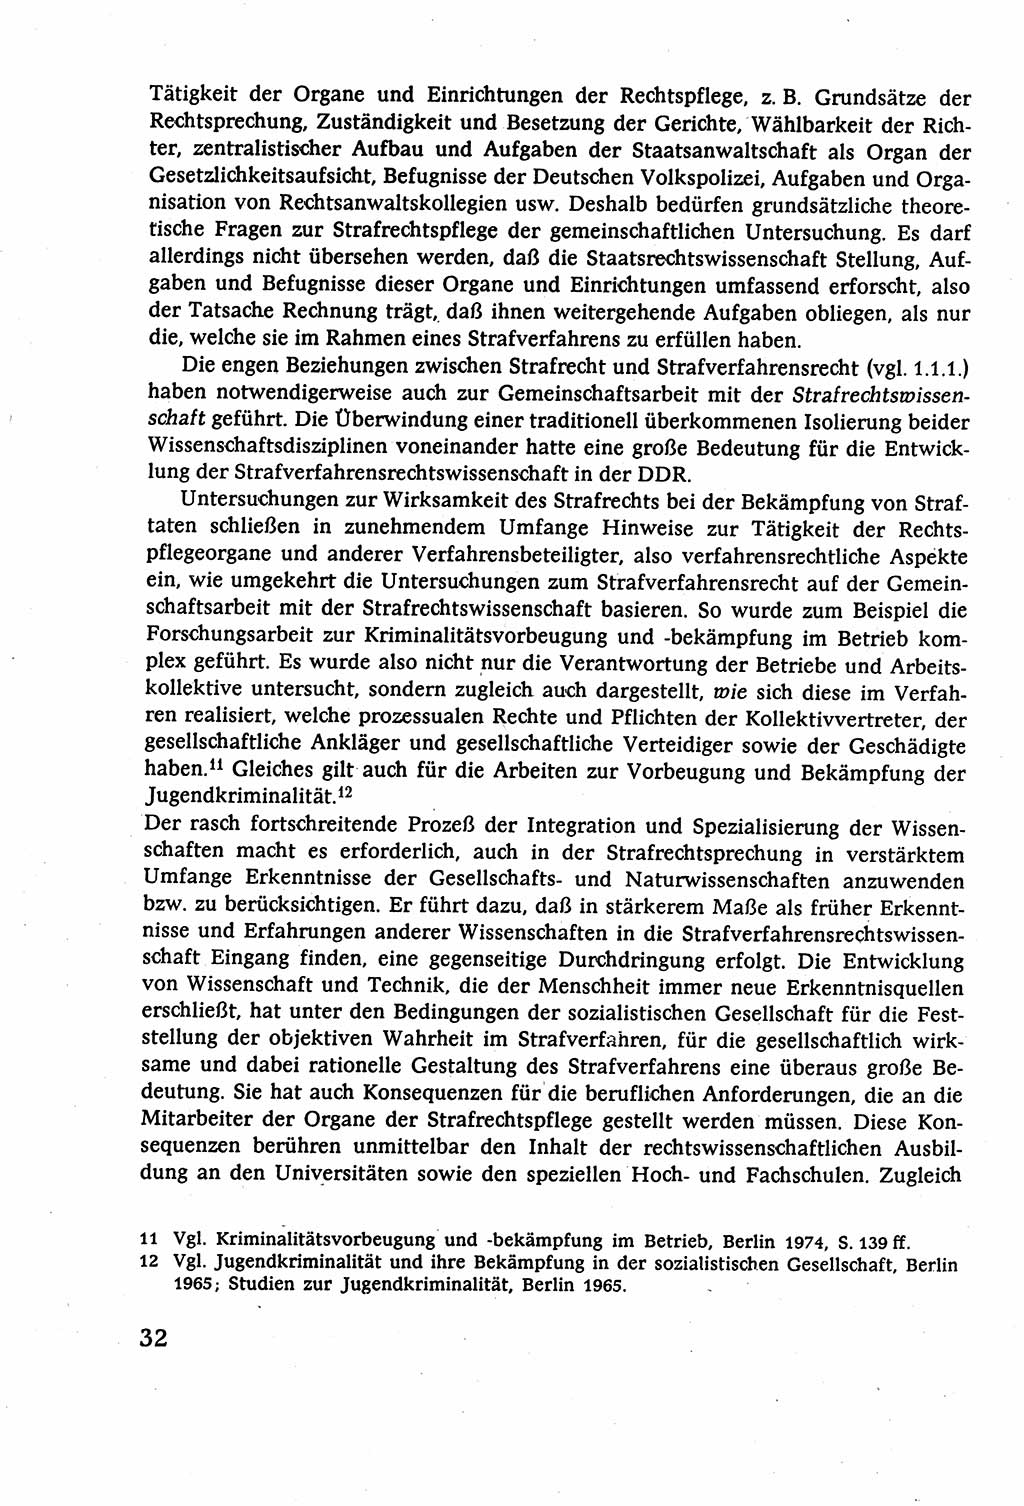 Strafverfahrensrecht [Deutsche Demokratische Republik (DDR)], Lehrbuch 1977, Seite 32 (Strafverf.-R. DDR Lb. 1977, S. 32)